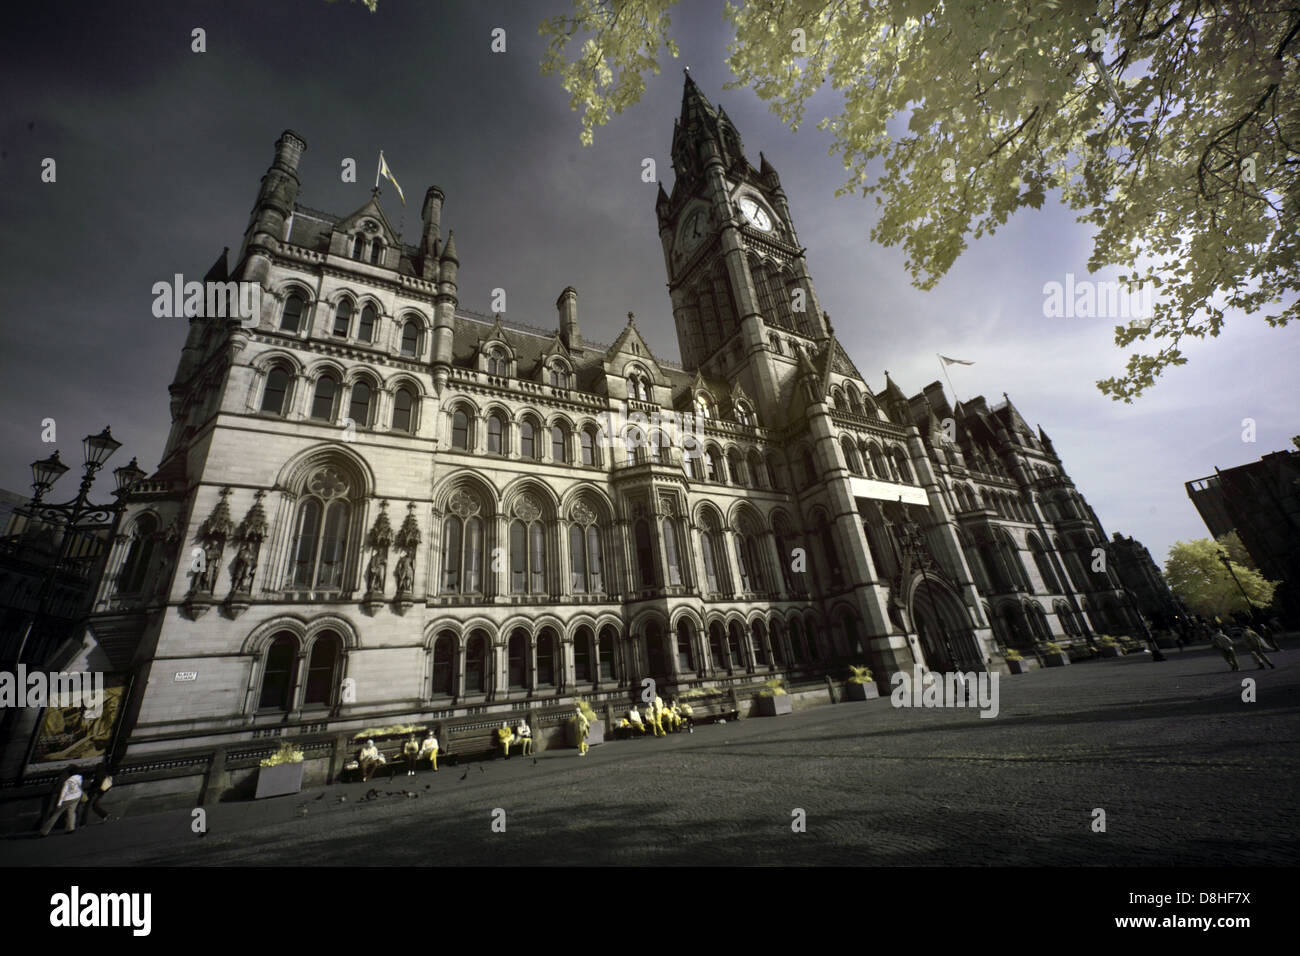 Manchester municipio gotico , Albert Square, Manchester, Inghilterra prese con un IR atto Canon 5D fotocamera reflex digitale M2 5DB Foto Stock